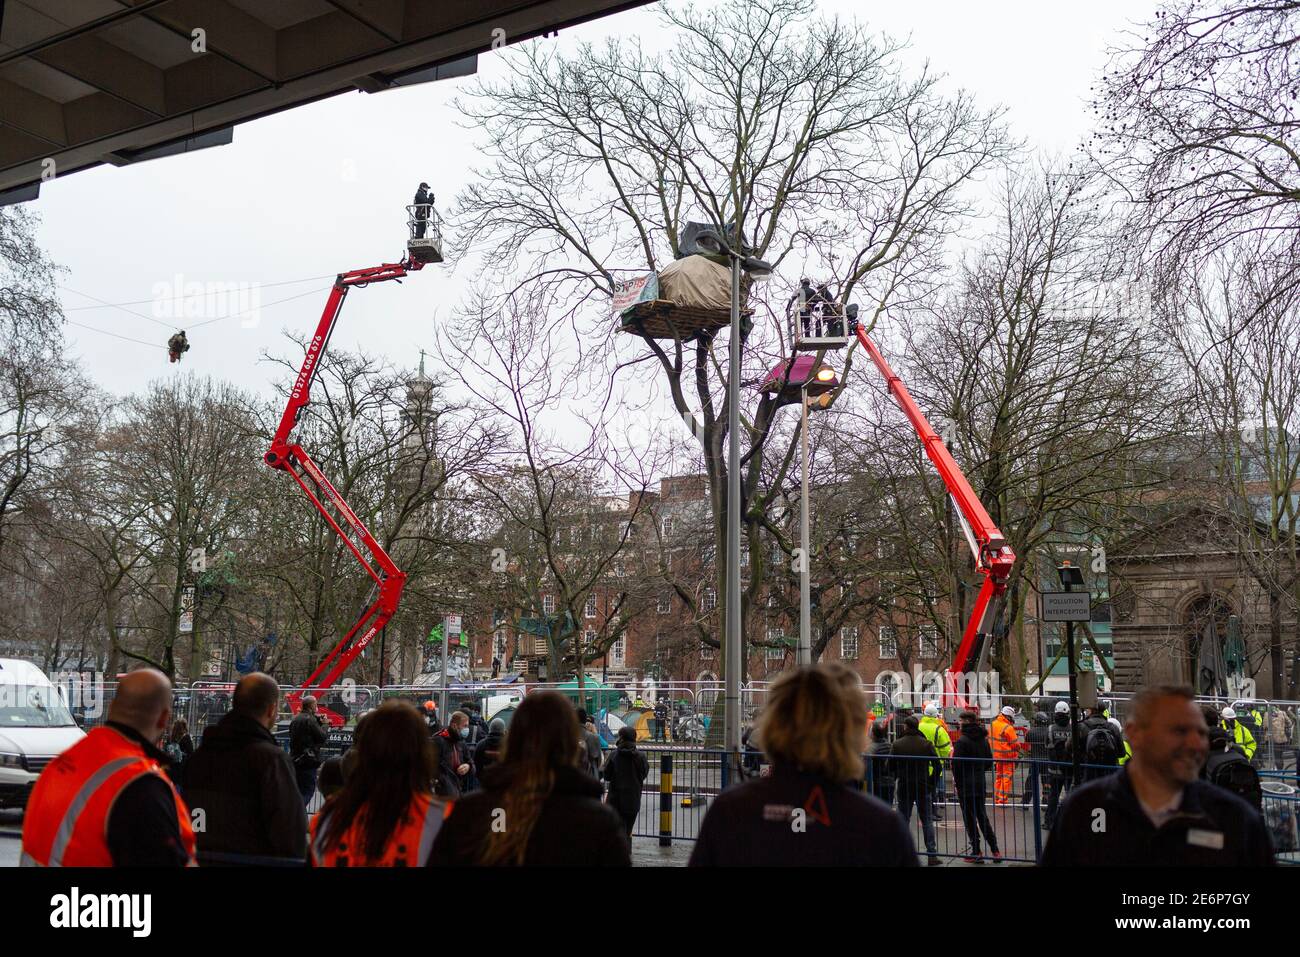 Desalojo de manifestantes de Stop HS2 del campamento en Euston Square Gardens, Londres, 27 de enero de 2021. Los cerezos rodean a los manifestantes en un árbol. Foto de stock